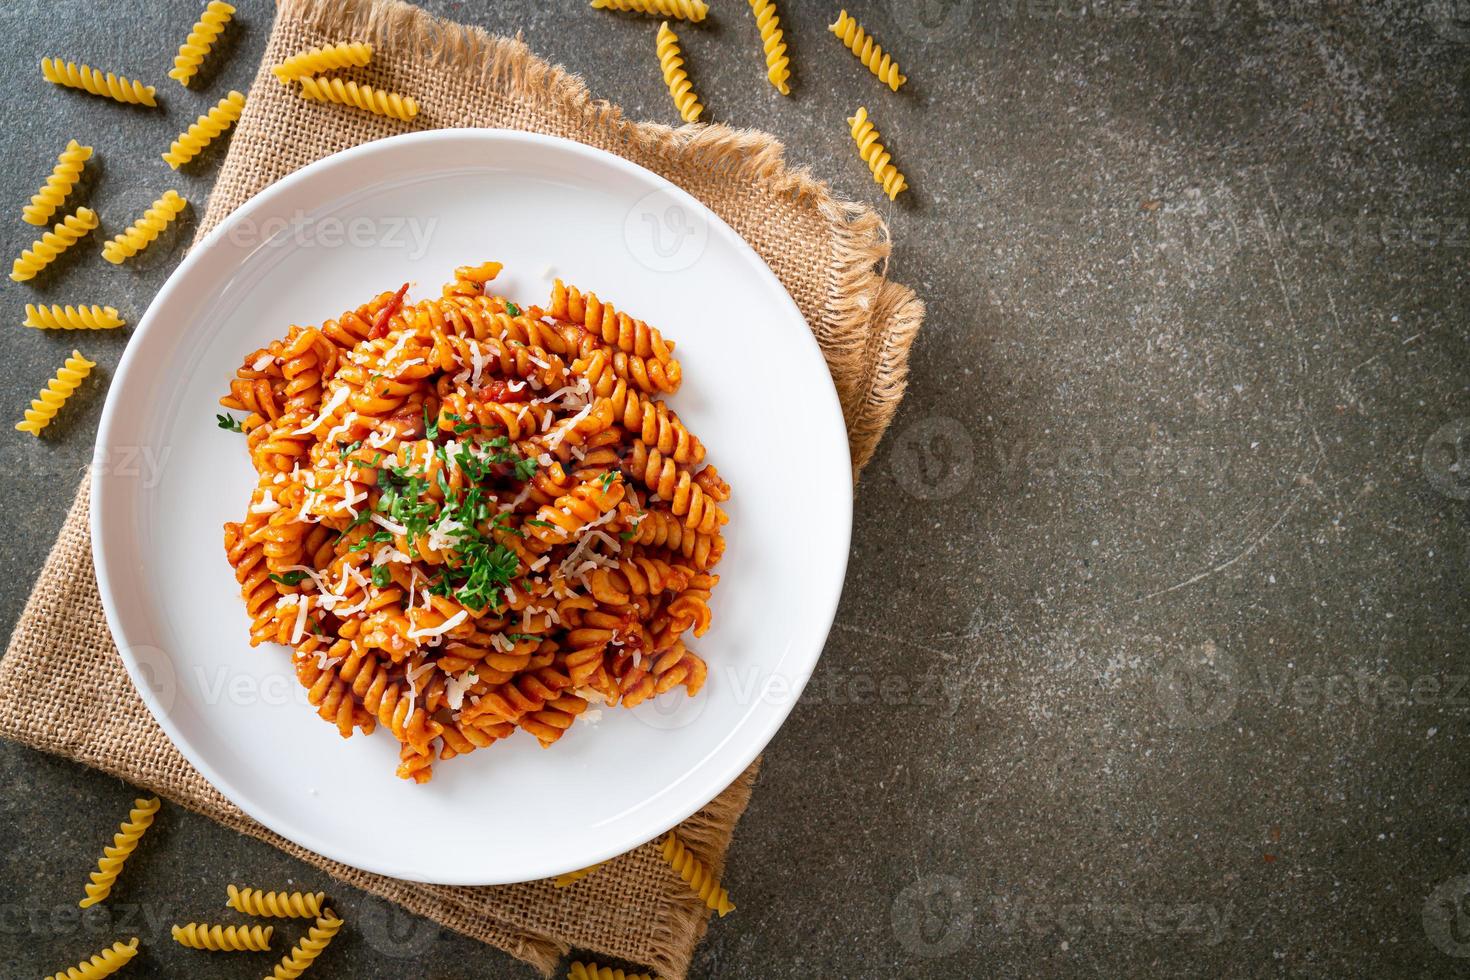 pâtes en spirale ou spirali avec sauce tomate et saucisses - style cuisine italienne photo